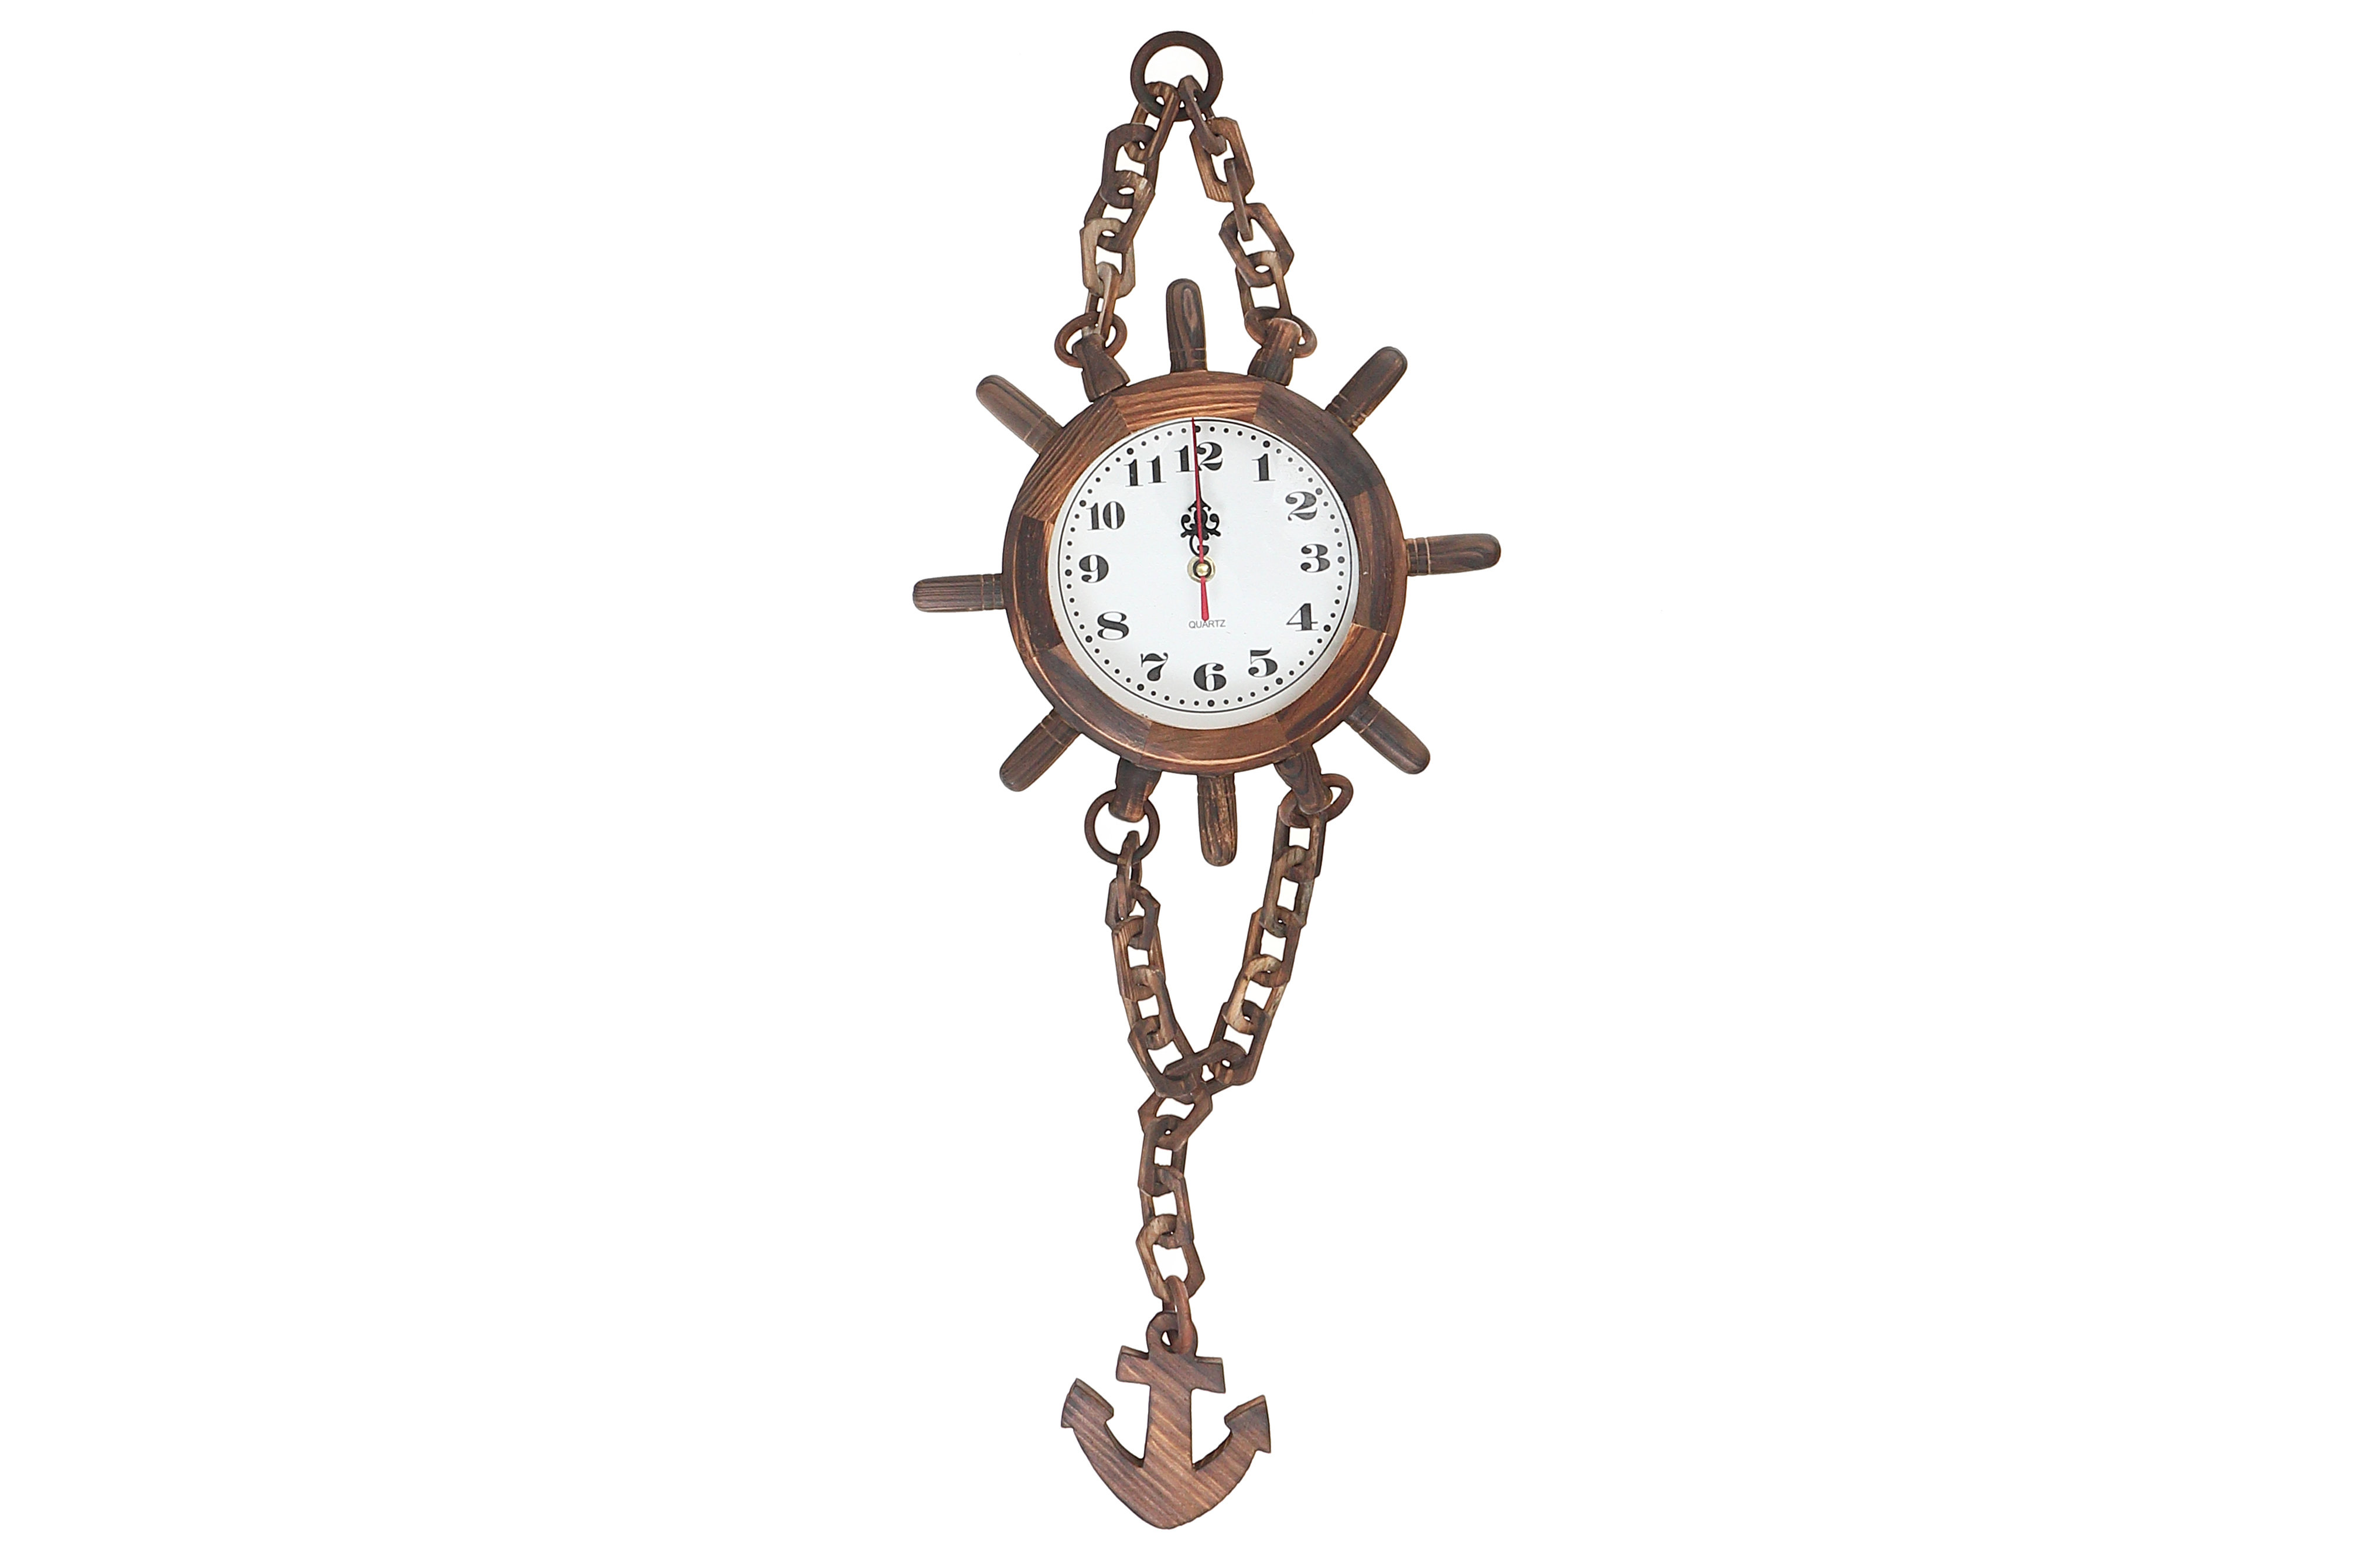 10 Ship Wheel Clock